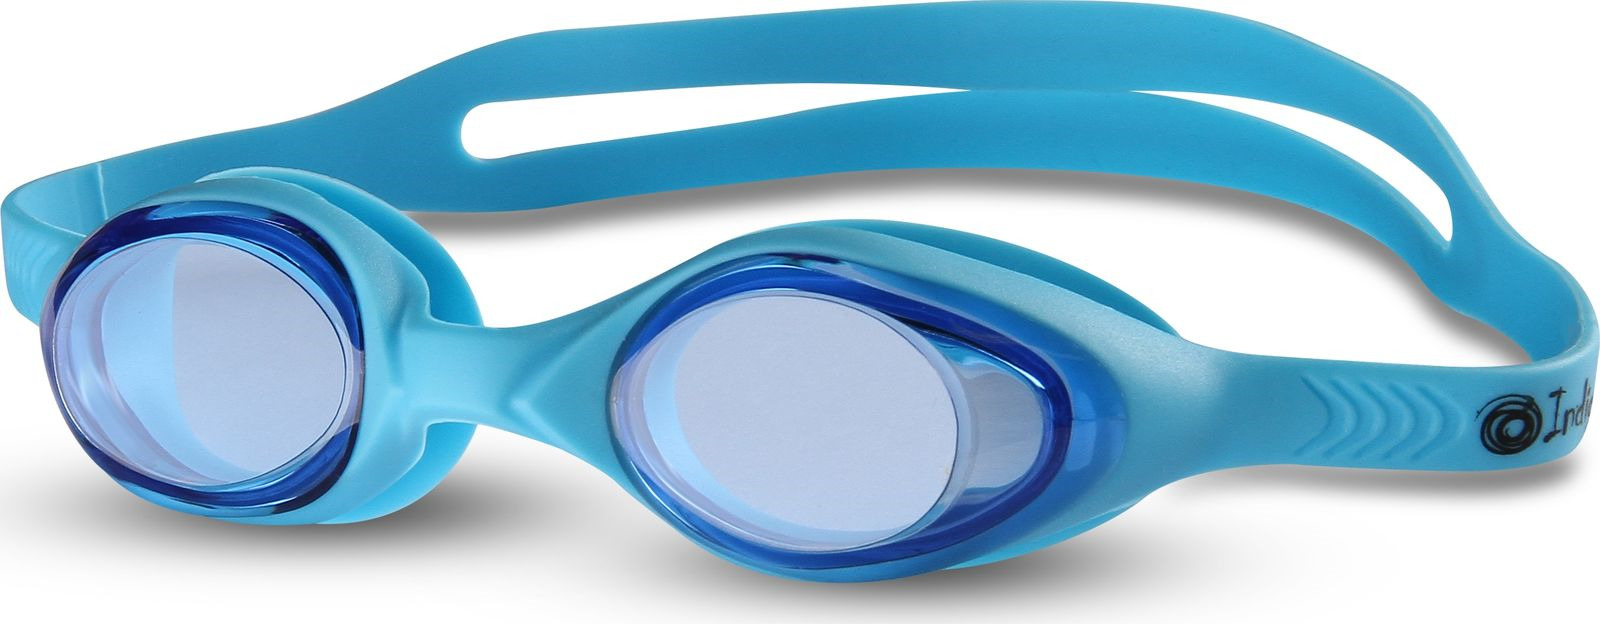 Очки для плавания детские Indigo, G6103, голубой